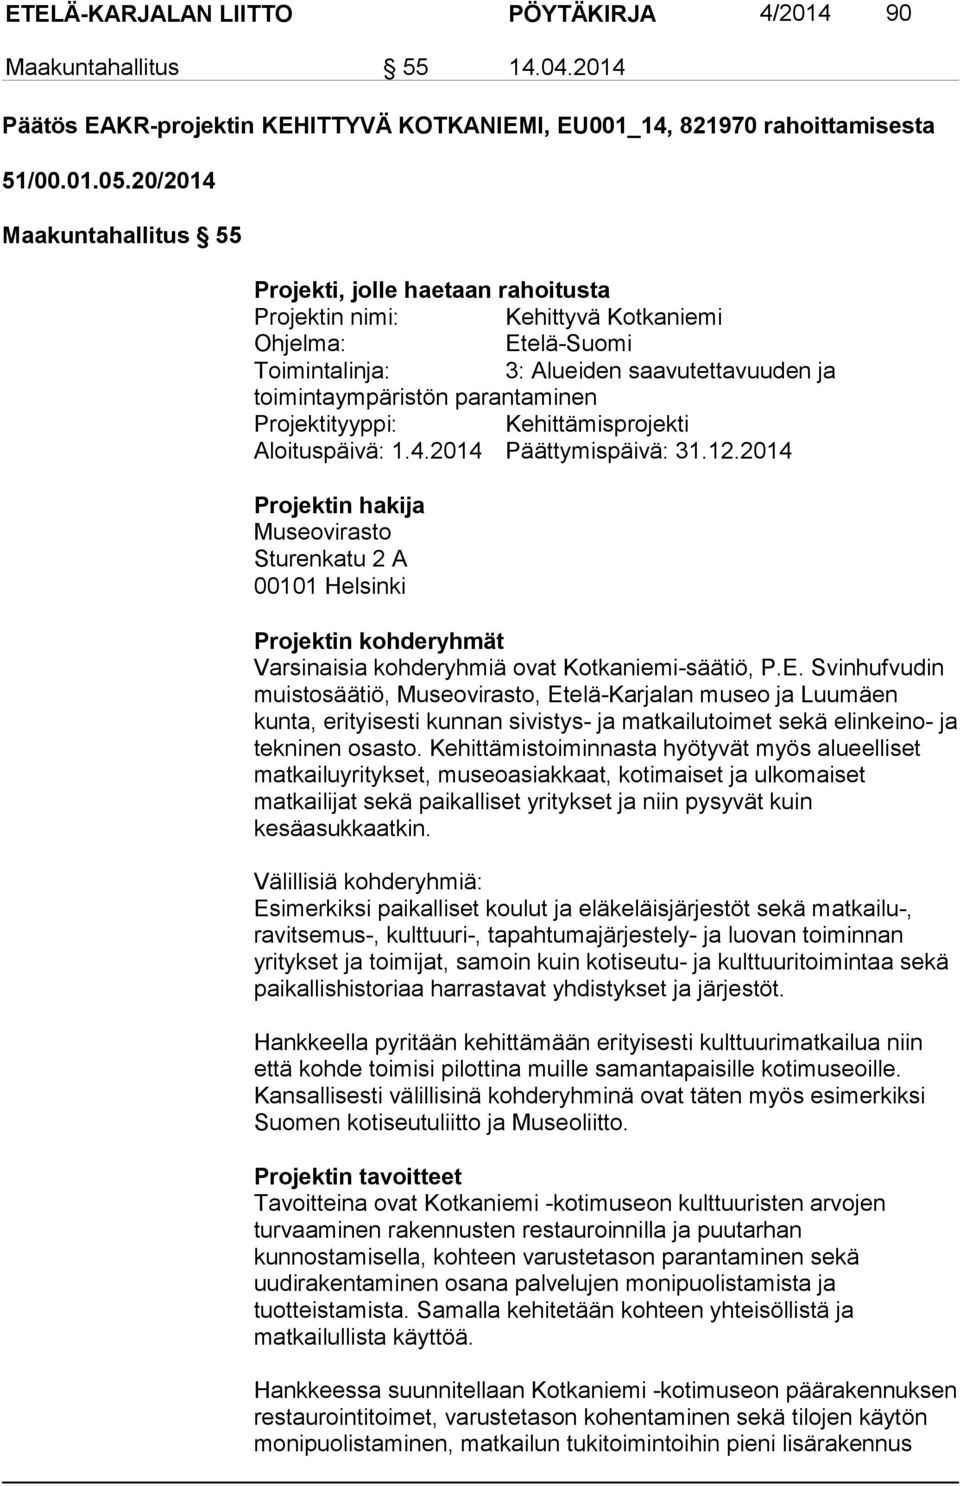 Projektityyppi: Kehittämisprojekti Aloituspäivä: 1.4.2014 Päättymispäivä: 31.12.